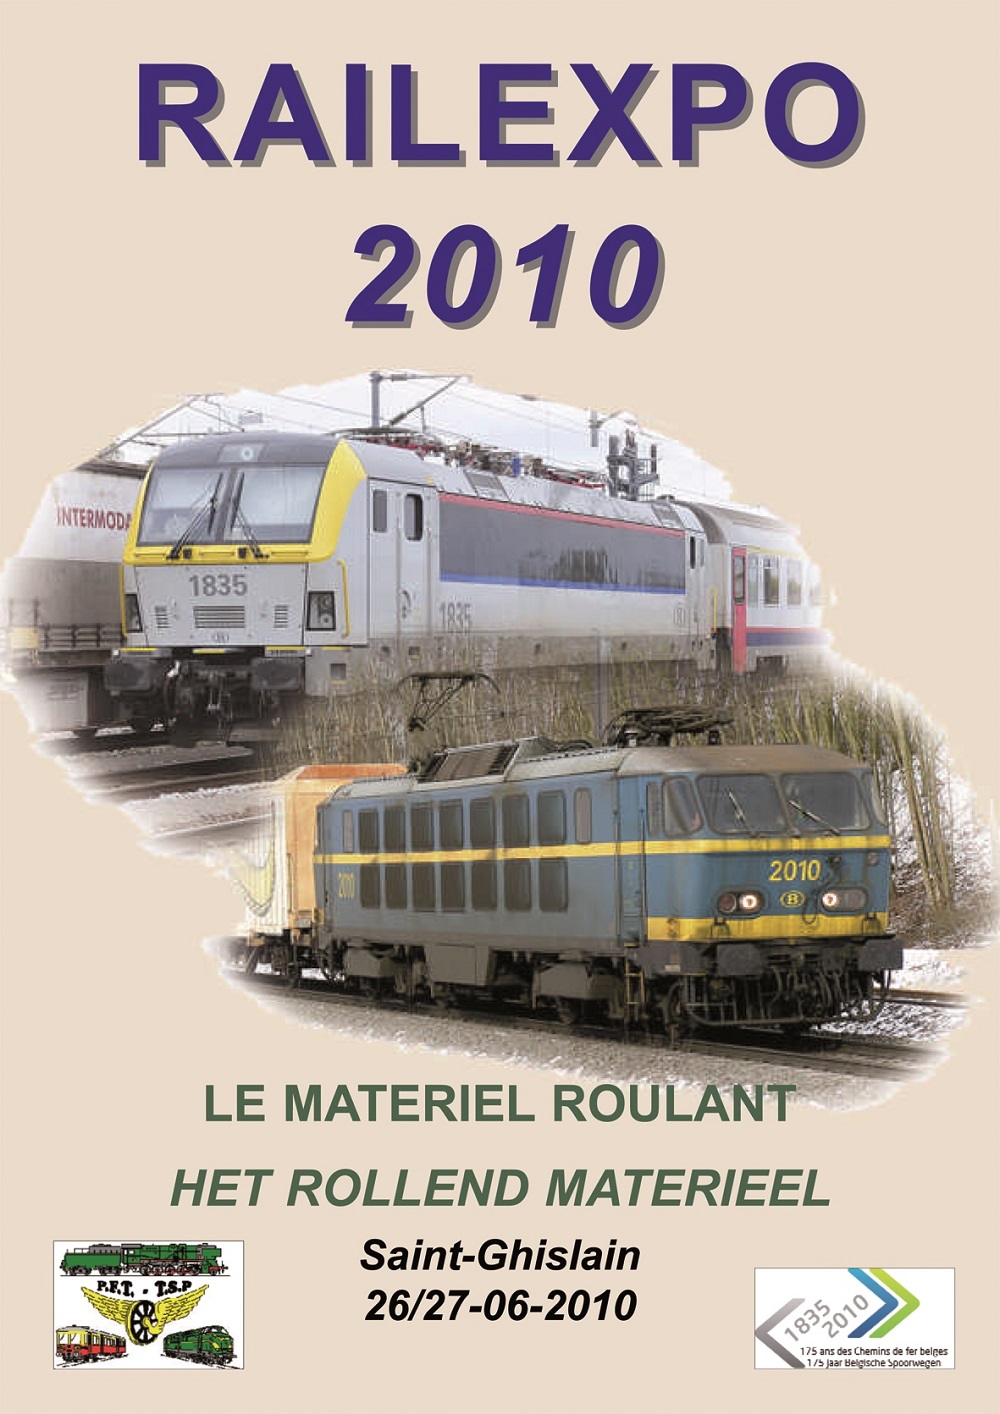 Railexpo 2010